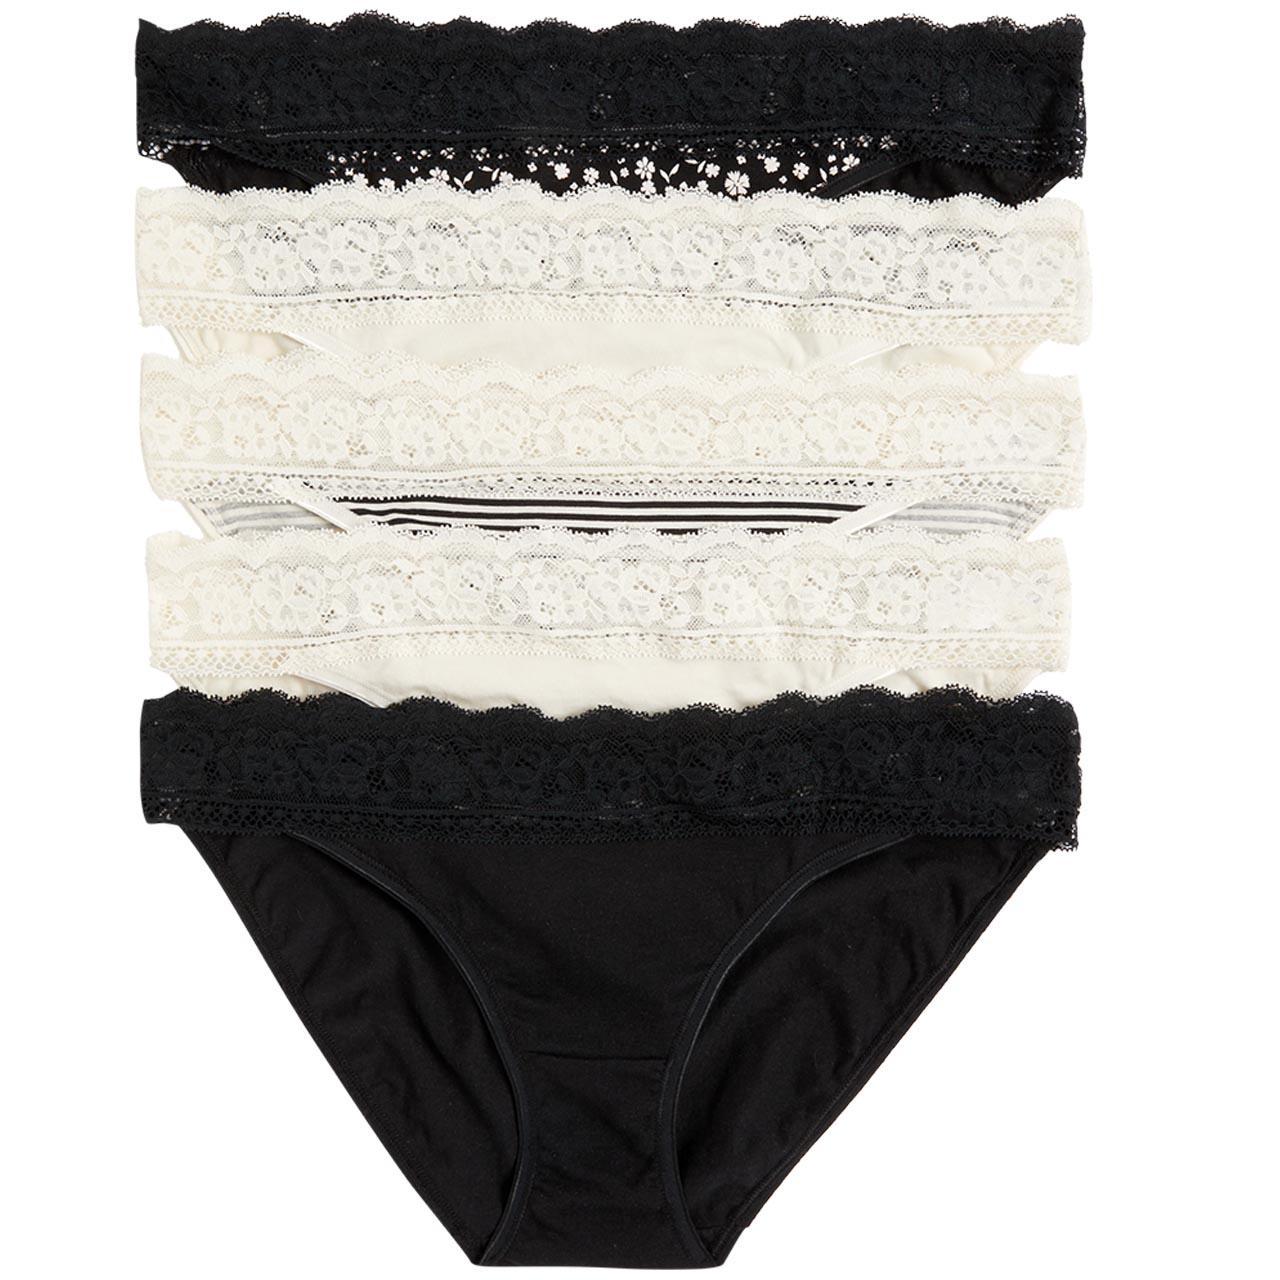 M&S Womens No VPL Cotton Modal Bikini Knickers '18 White 5prs (5) - Compare  Prices & Where To Buy 